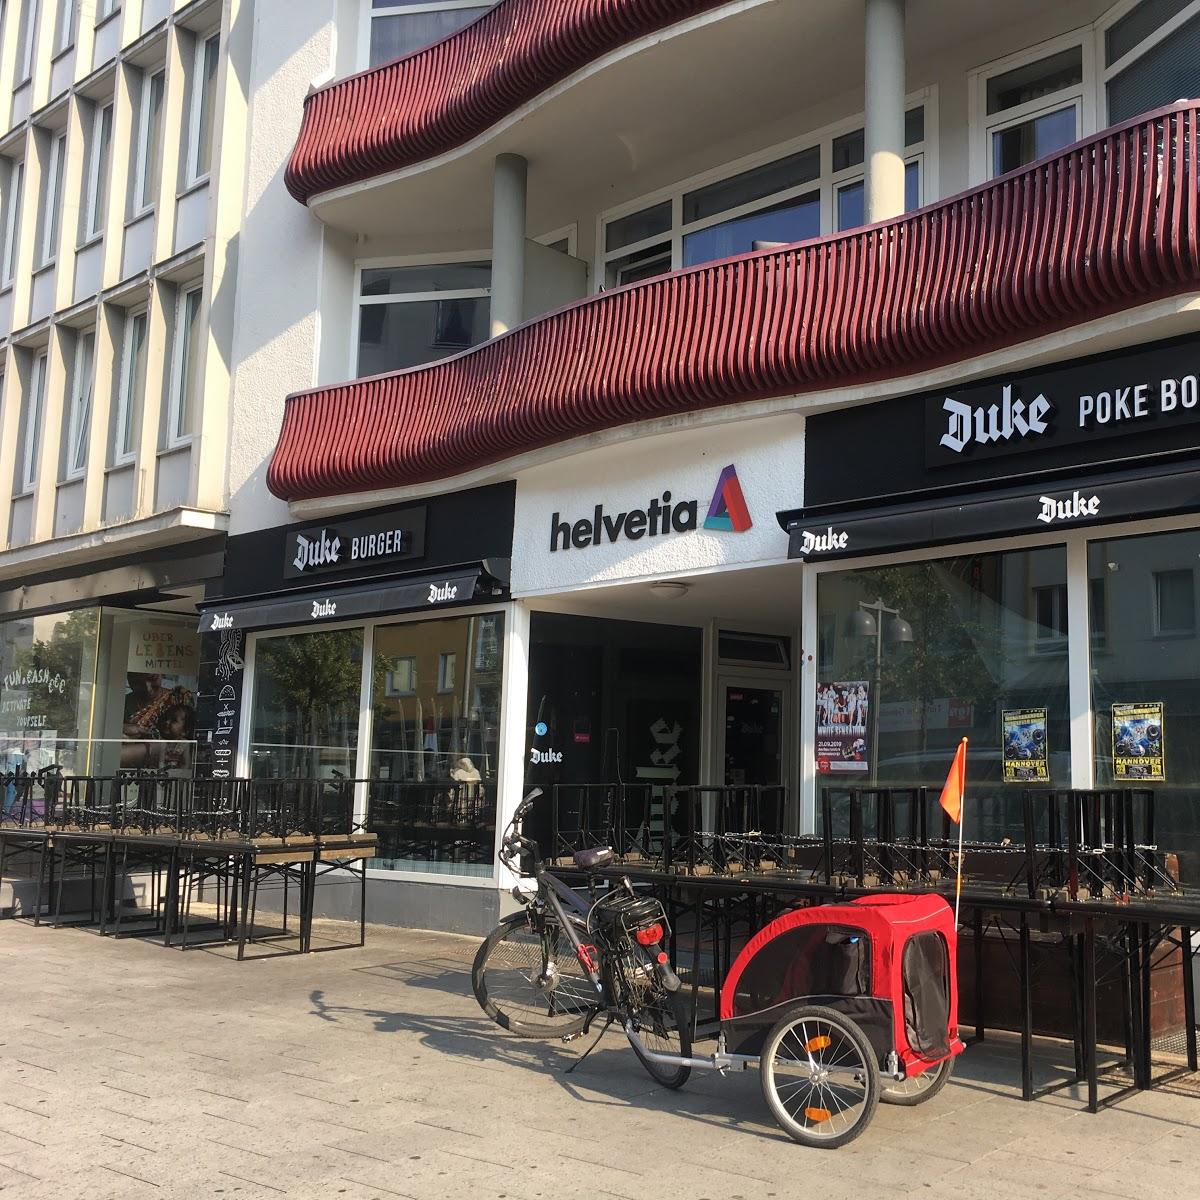 Restaurant "Duke Burger" in Hannover